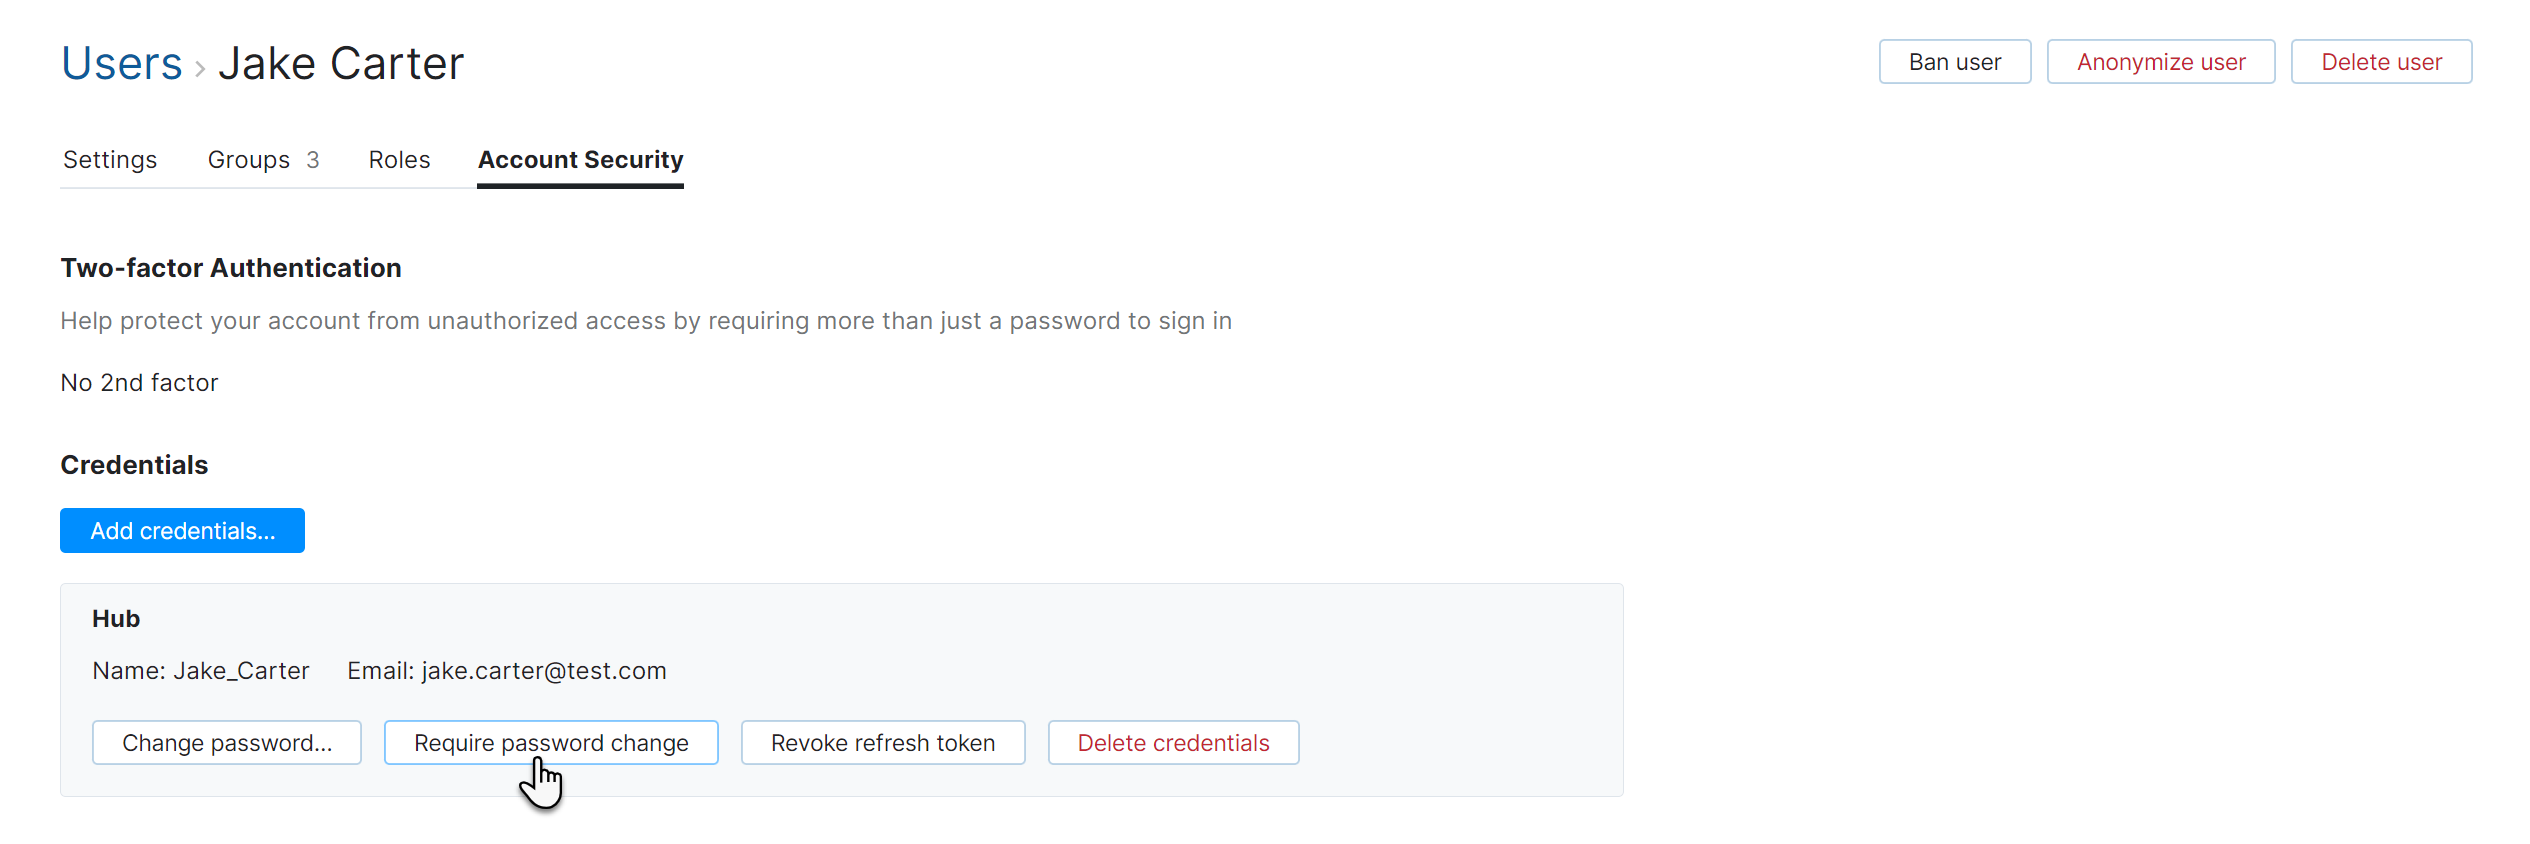 User require password change